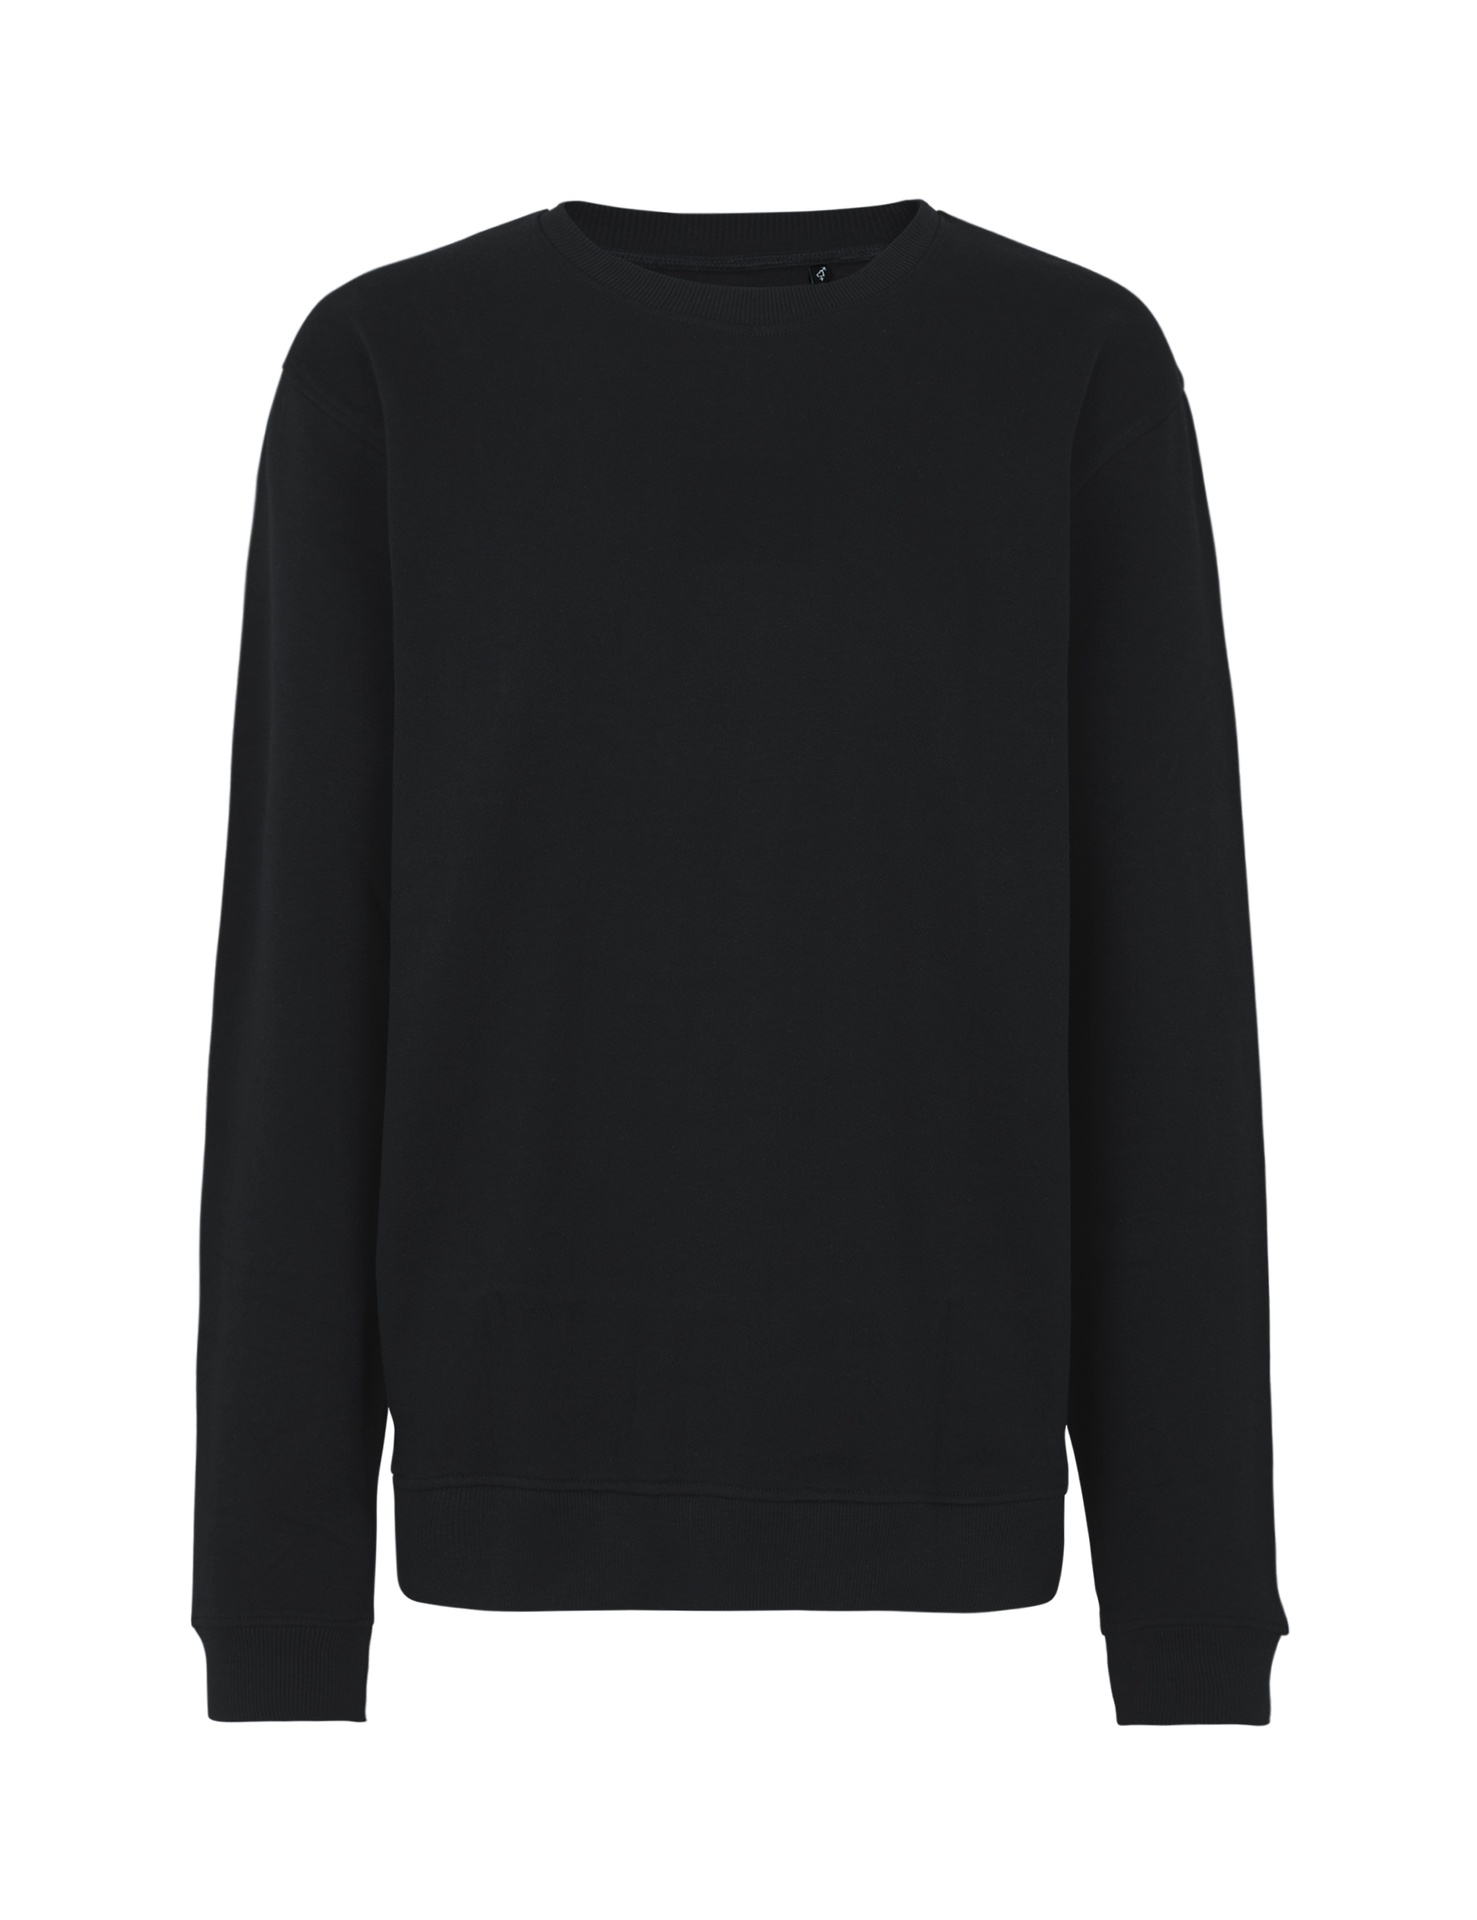 [PR/03530] Unisex Workwear Sweatshirt (Black 03, 3XL)